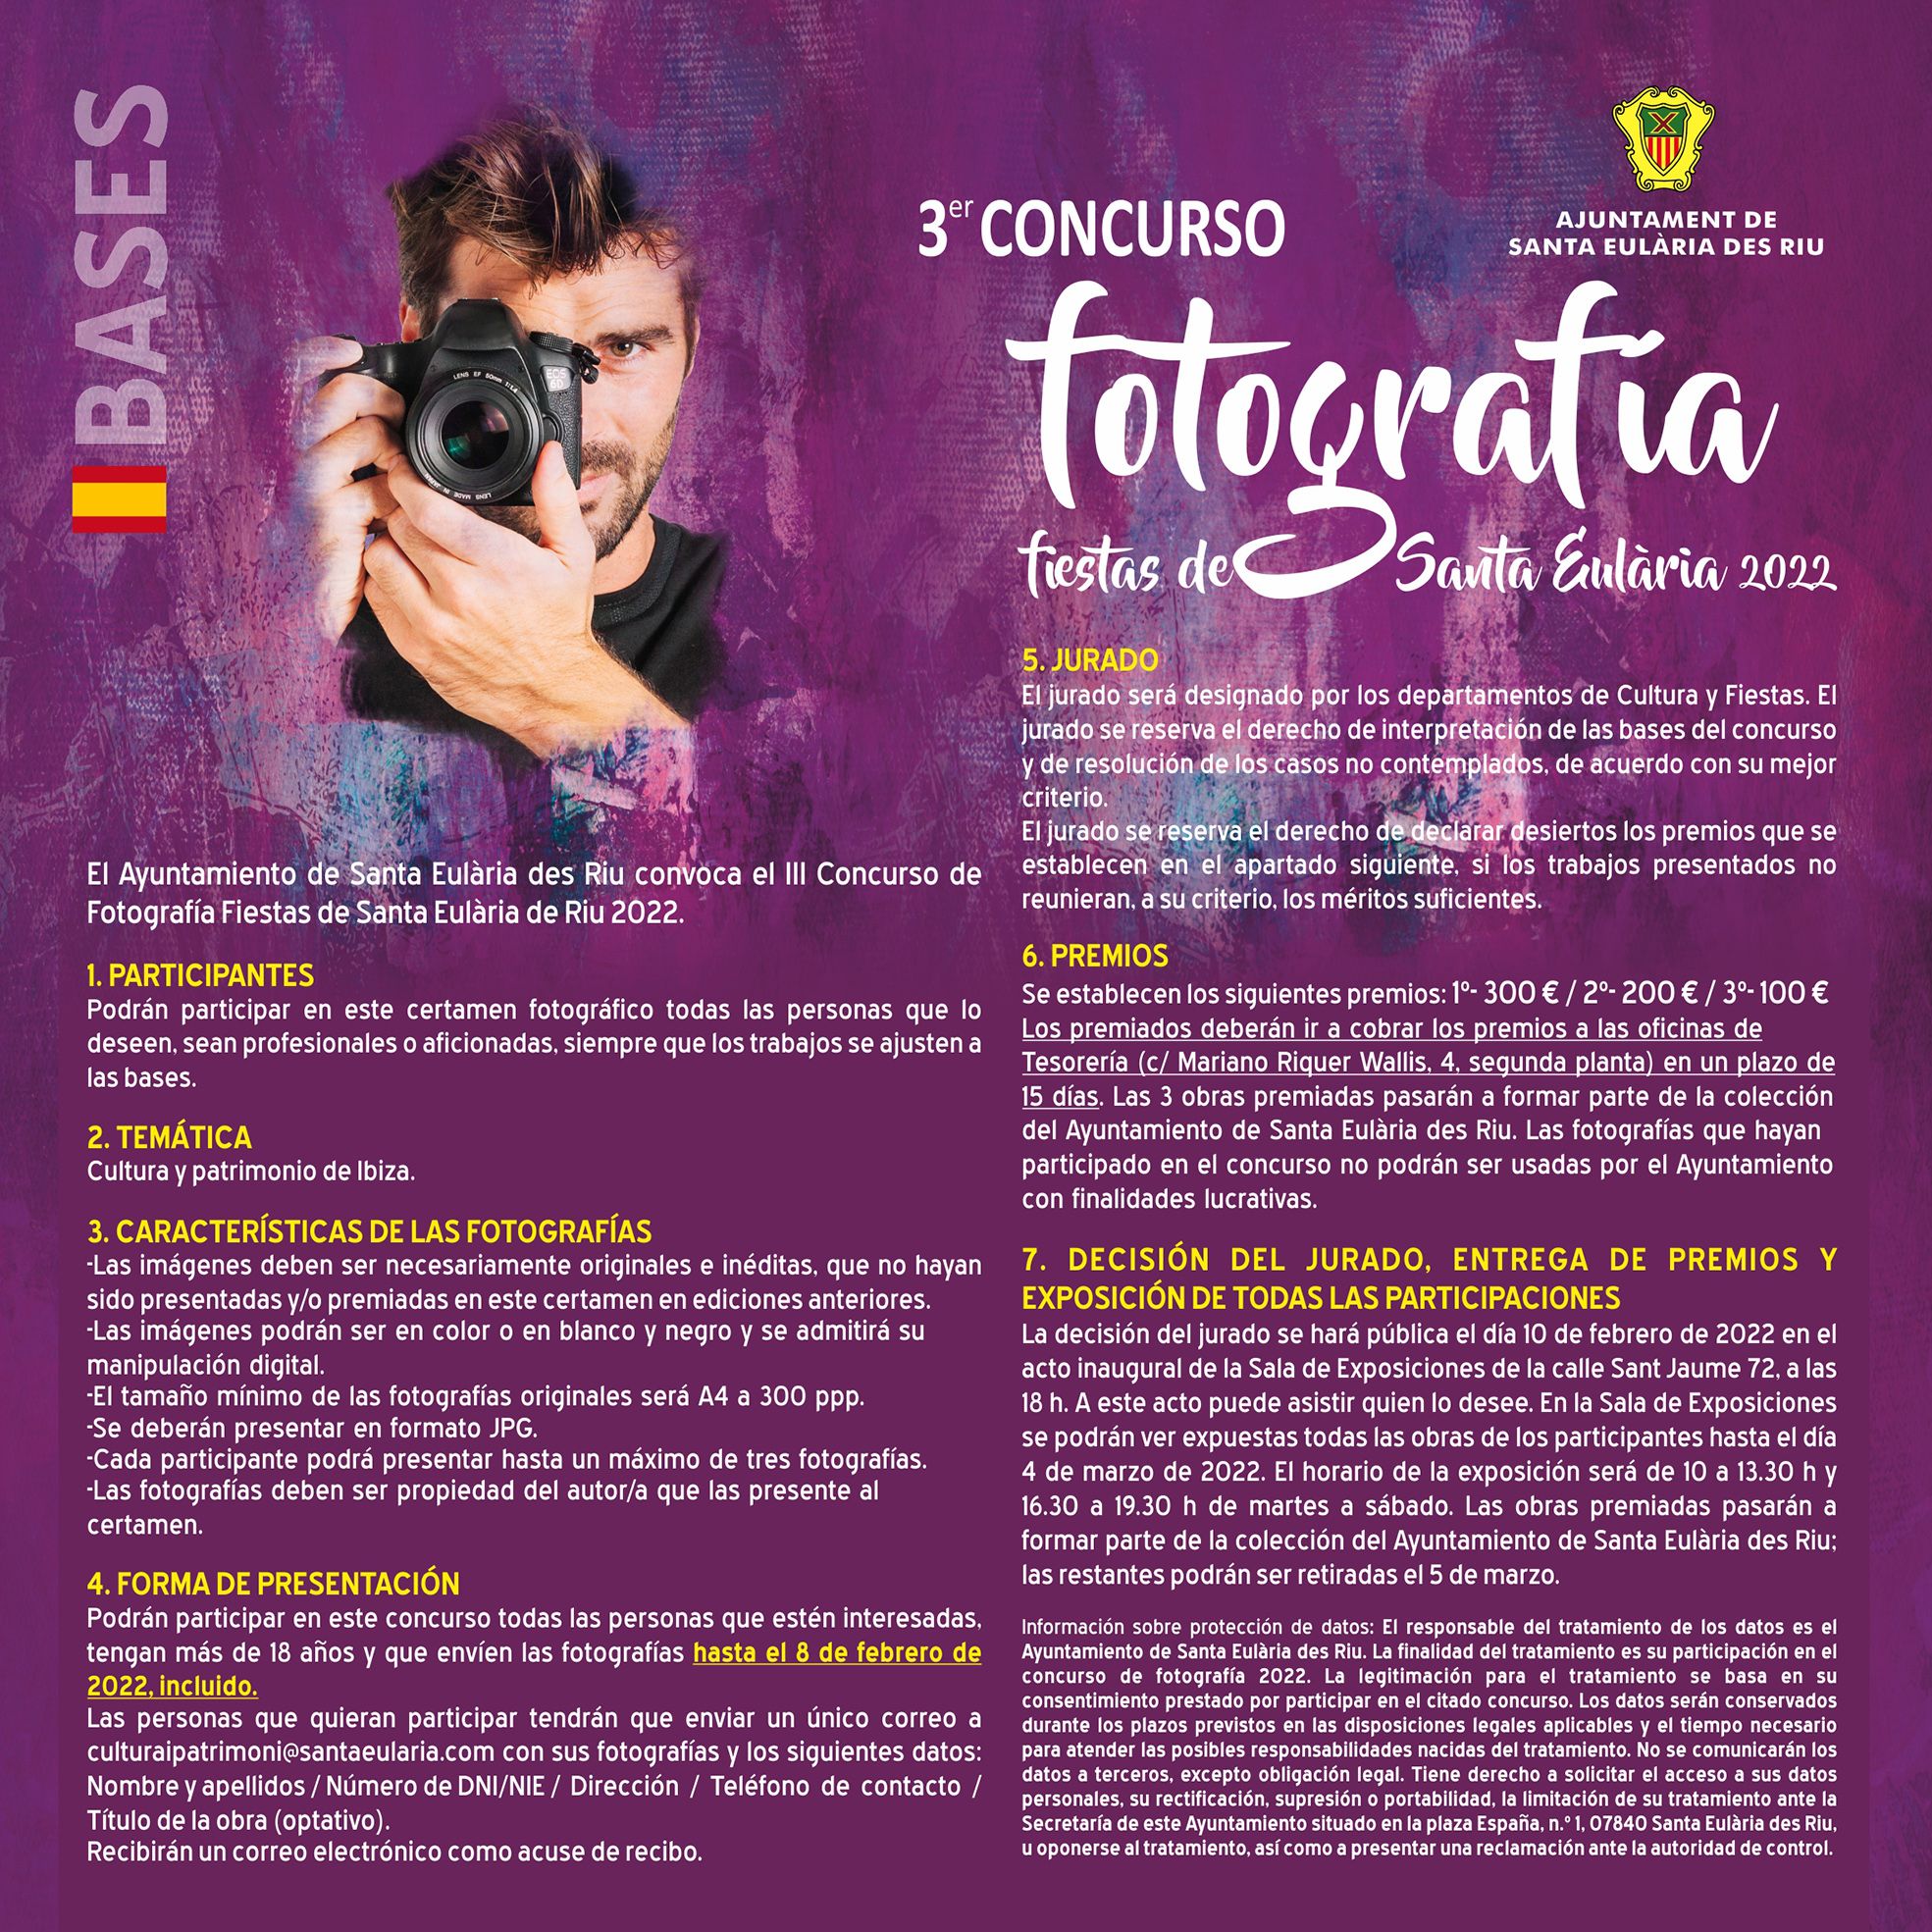 Exposición del Concurso de Fotografía Fiestas de Santa Eulària 2022